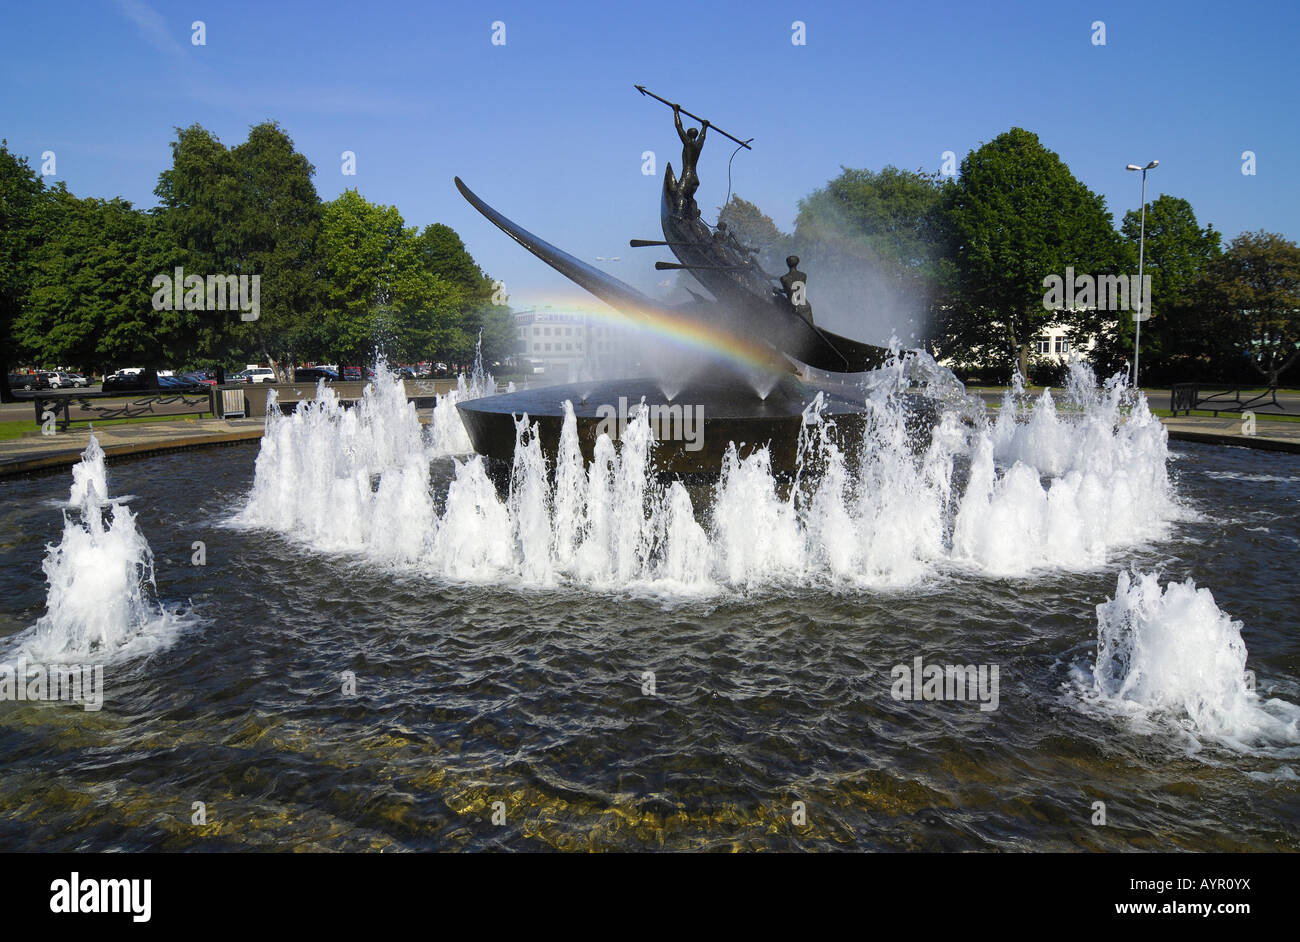 La caccia alla balena controverso monumento di scultore norvegese Knut Steen, fontana e rainbow, Sandefjord, Vestfold, Norvegia meridionale, S Foto Stock